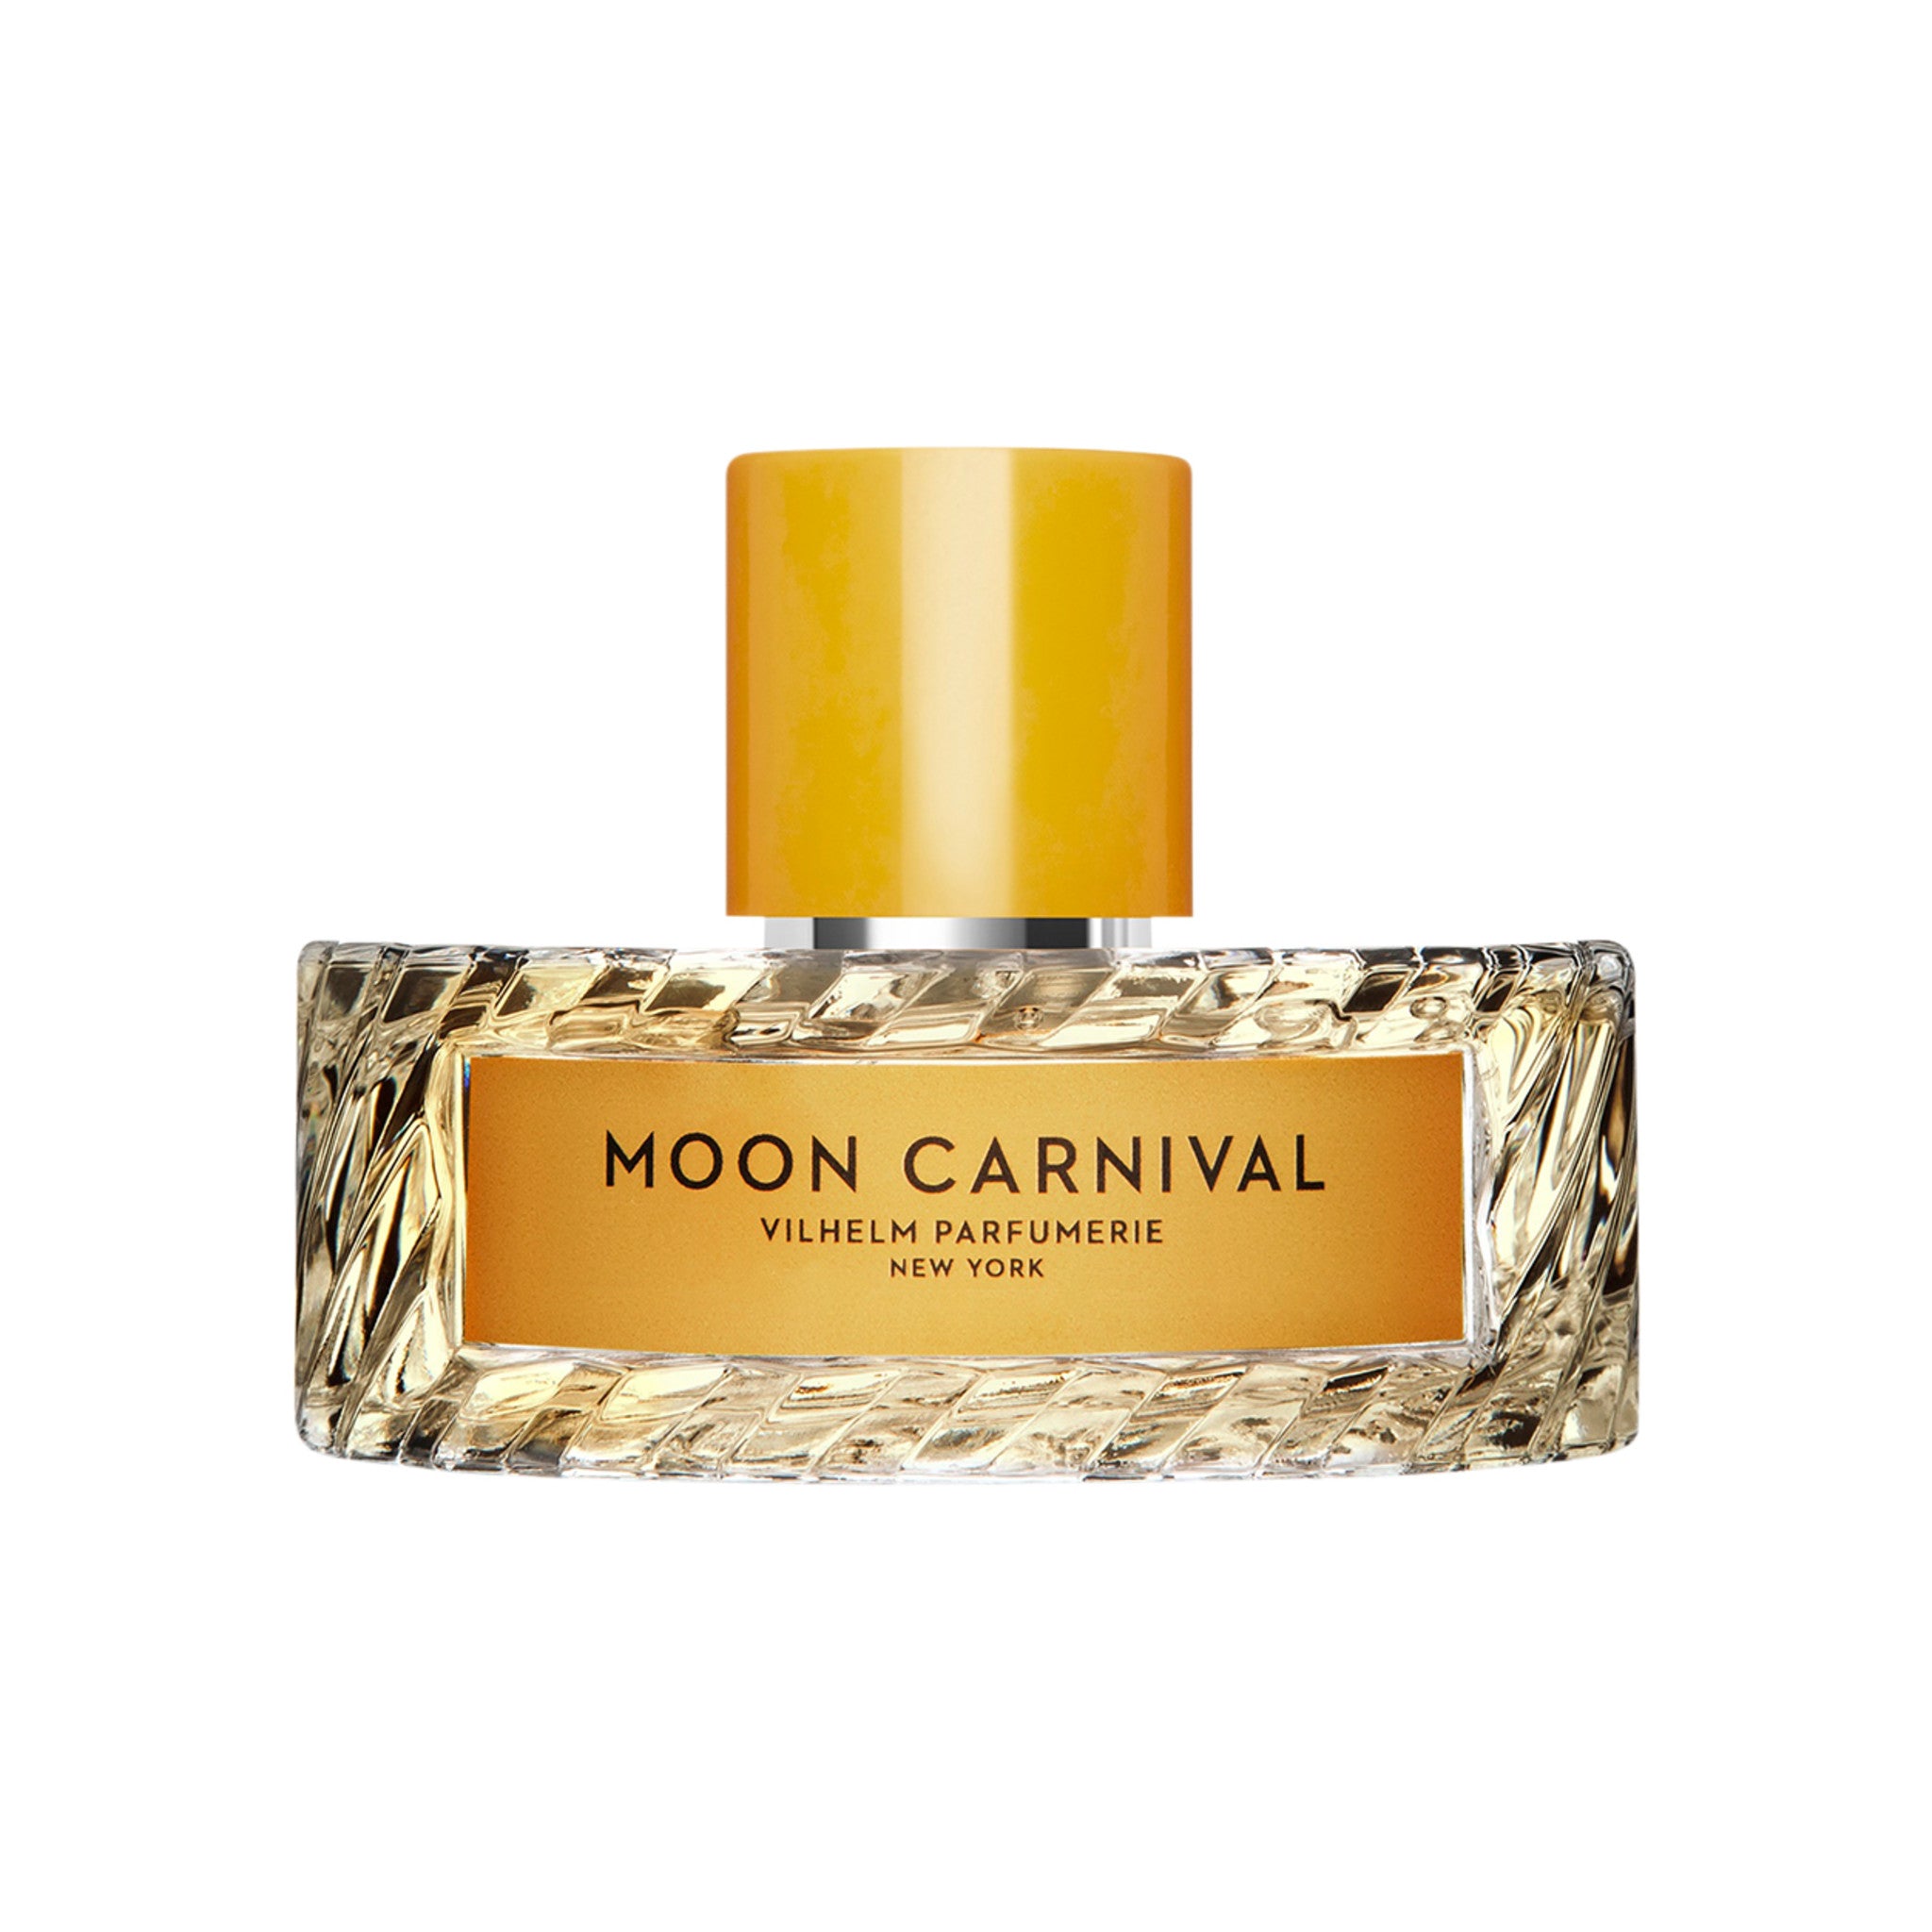 Vilhelm Parfumerie Moon Carnival Eau de Parfum Size variant: 3.38 fl oz | 100 ml main image.